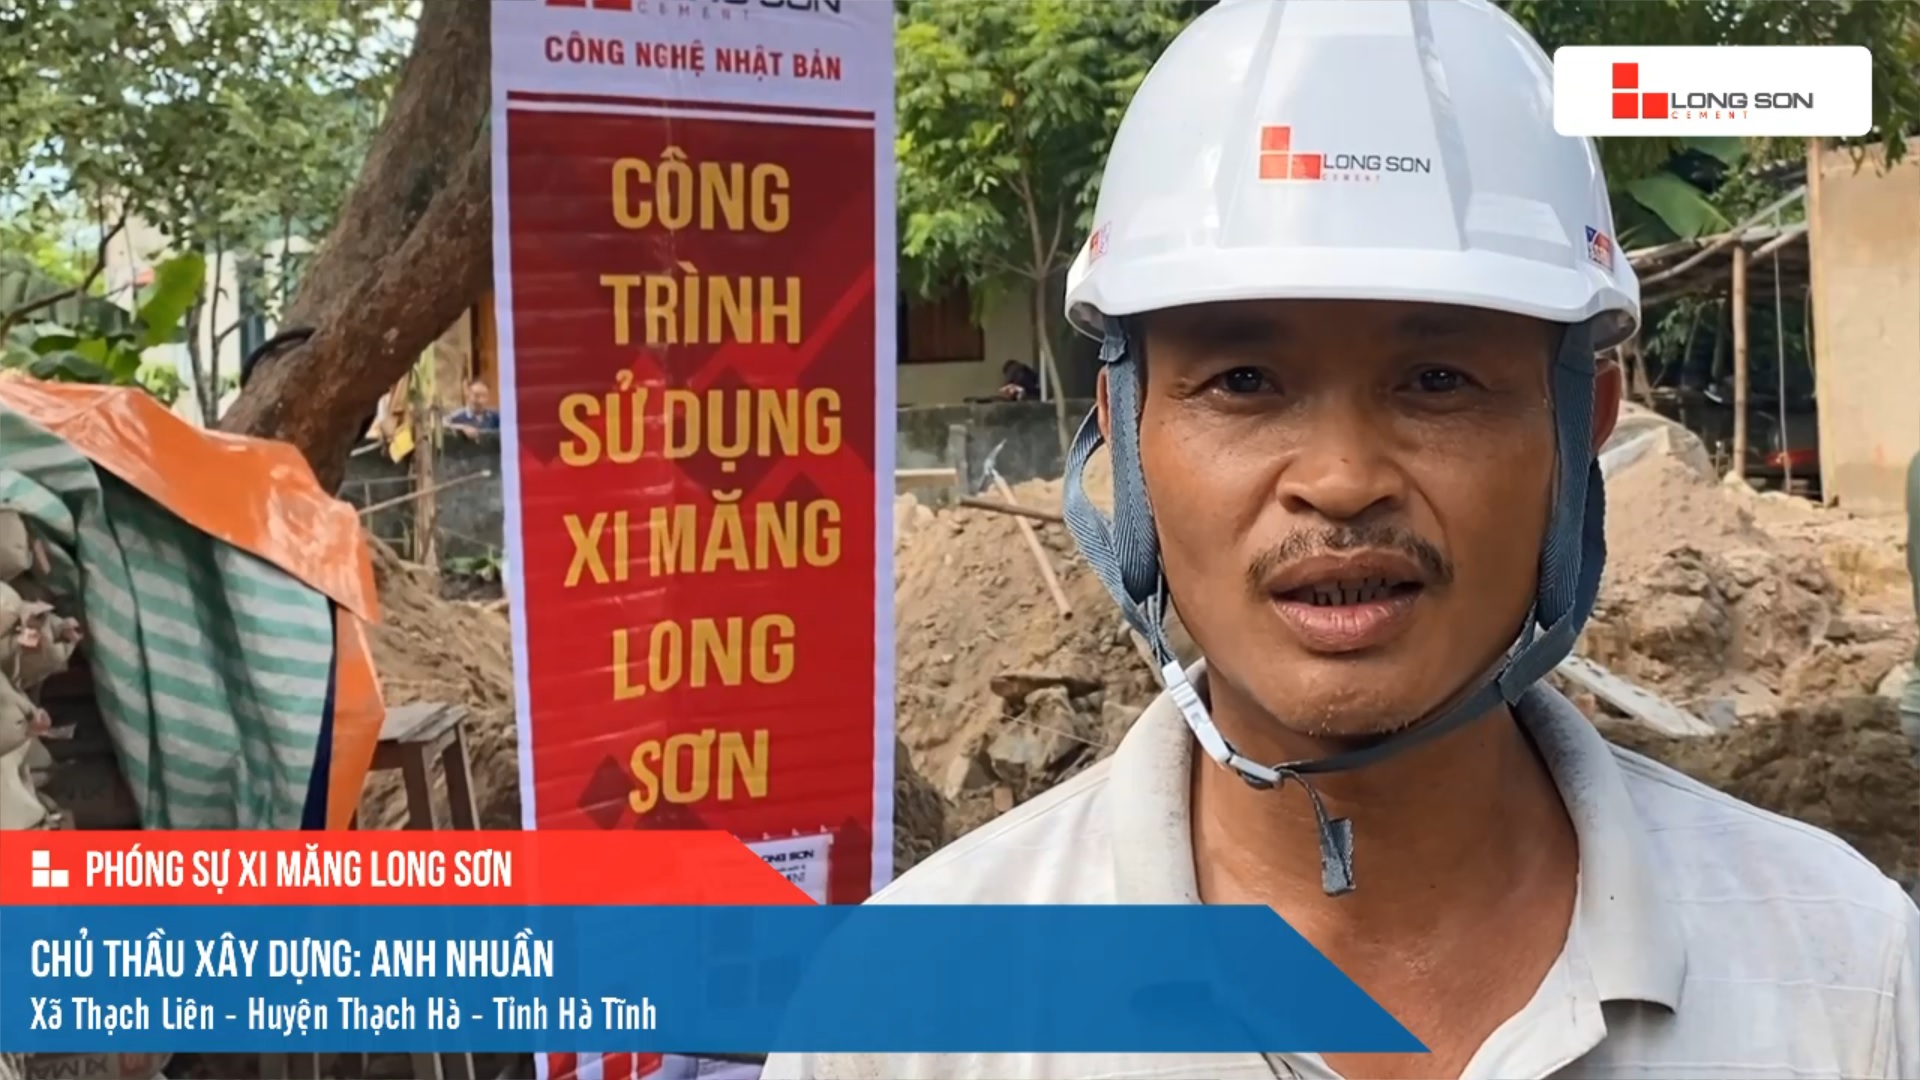 Phóng sự công trình sử dụng xi măng Long Sơn tại Hà Tĩnh ngày 26/07/2021